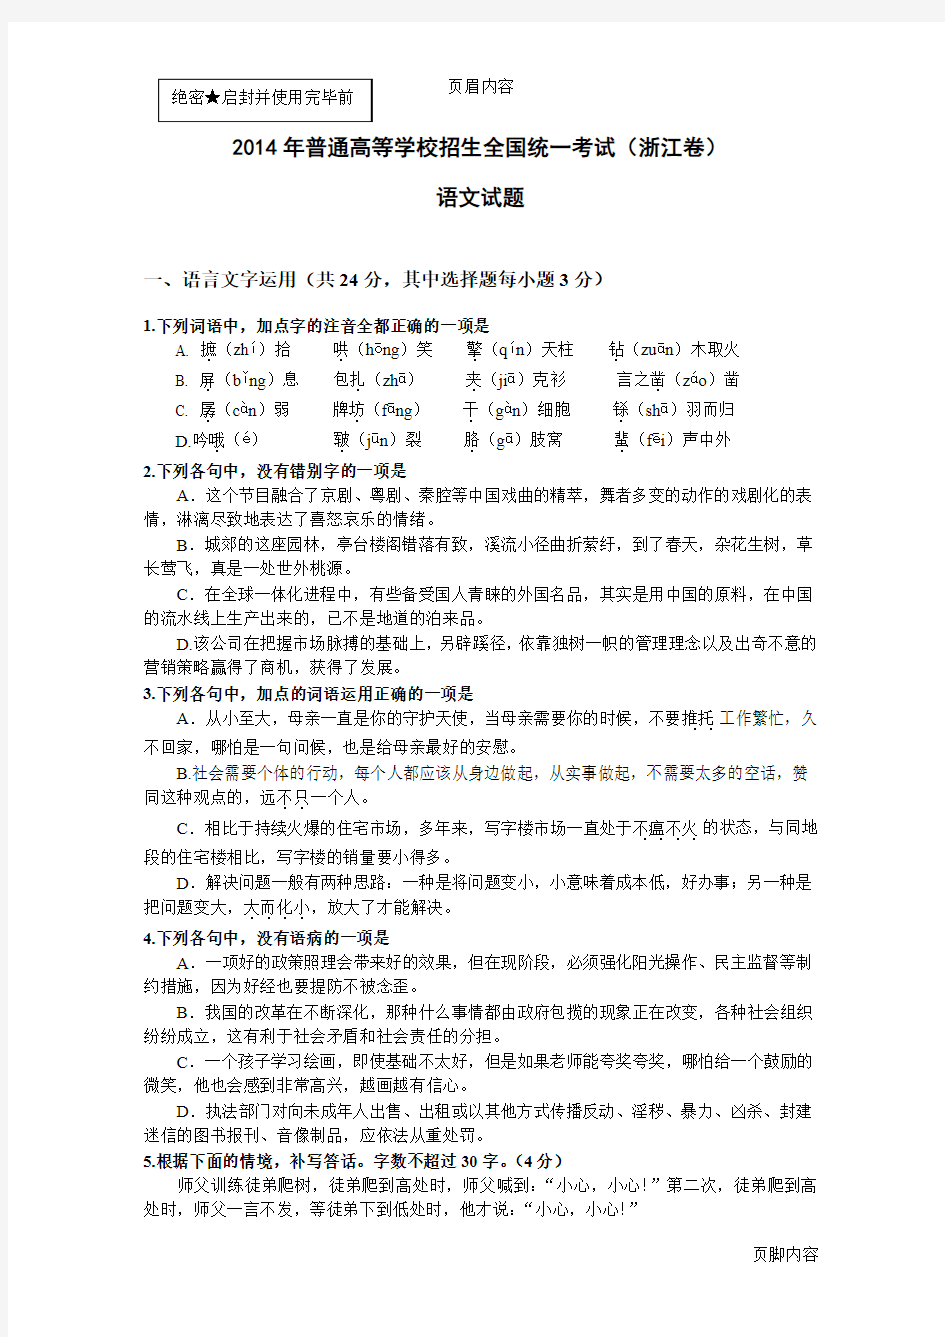 2014年浙江省高考语文试题及官方答案